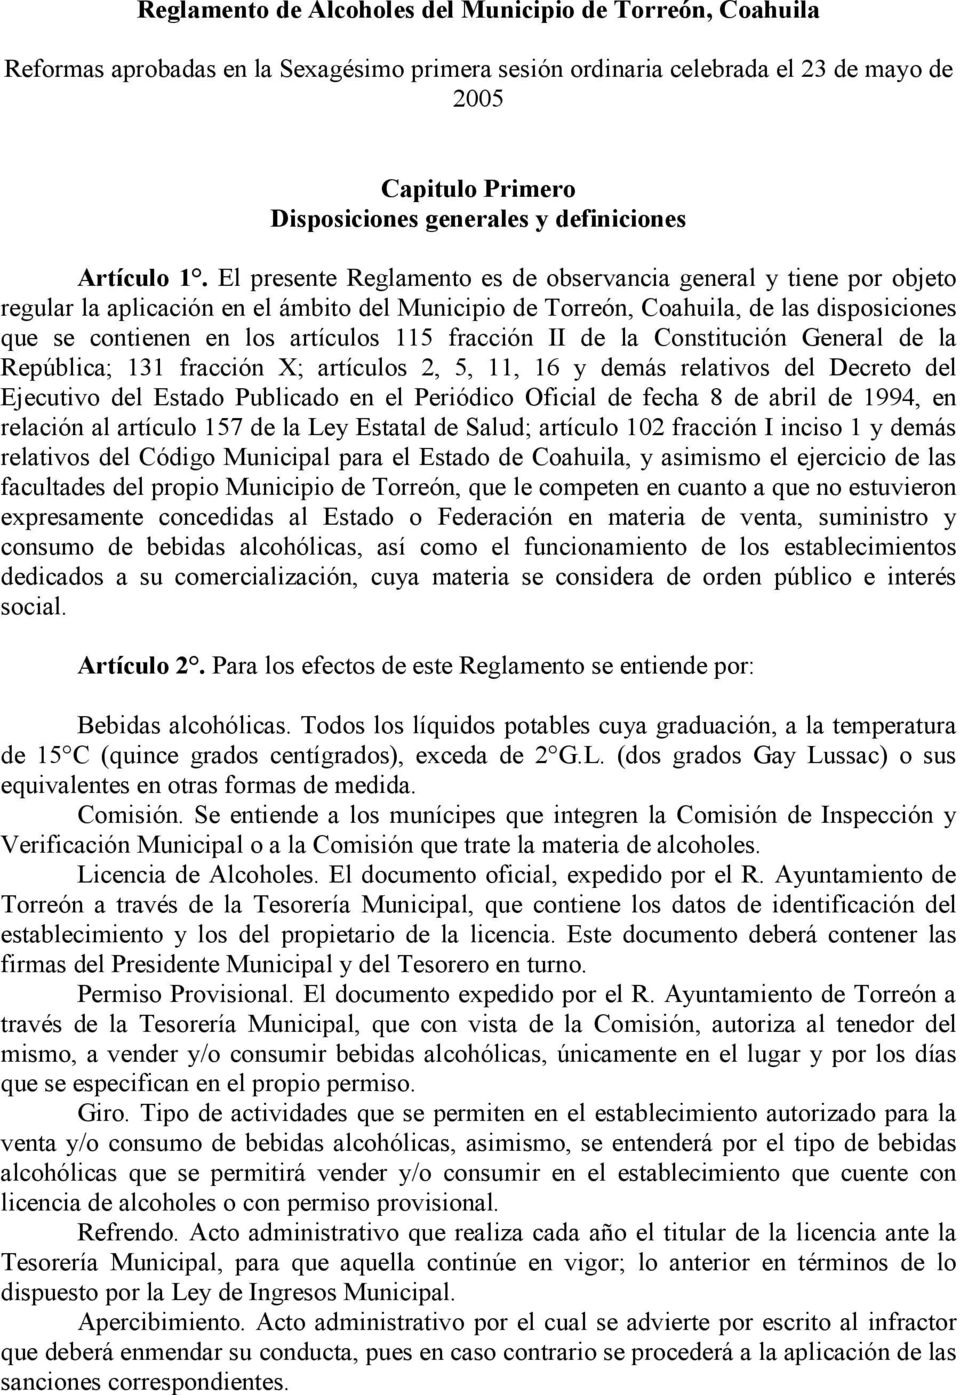 El presente Reglamento es de observancia general y tiene por objeto regular la aplicación en el ámbito del Municipio de Torreón, Coahuila, de las disposiciones que se contienen en los artículos 115